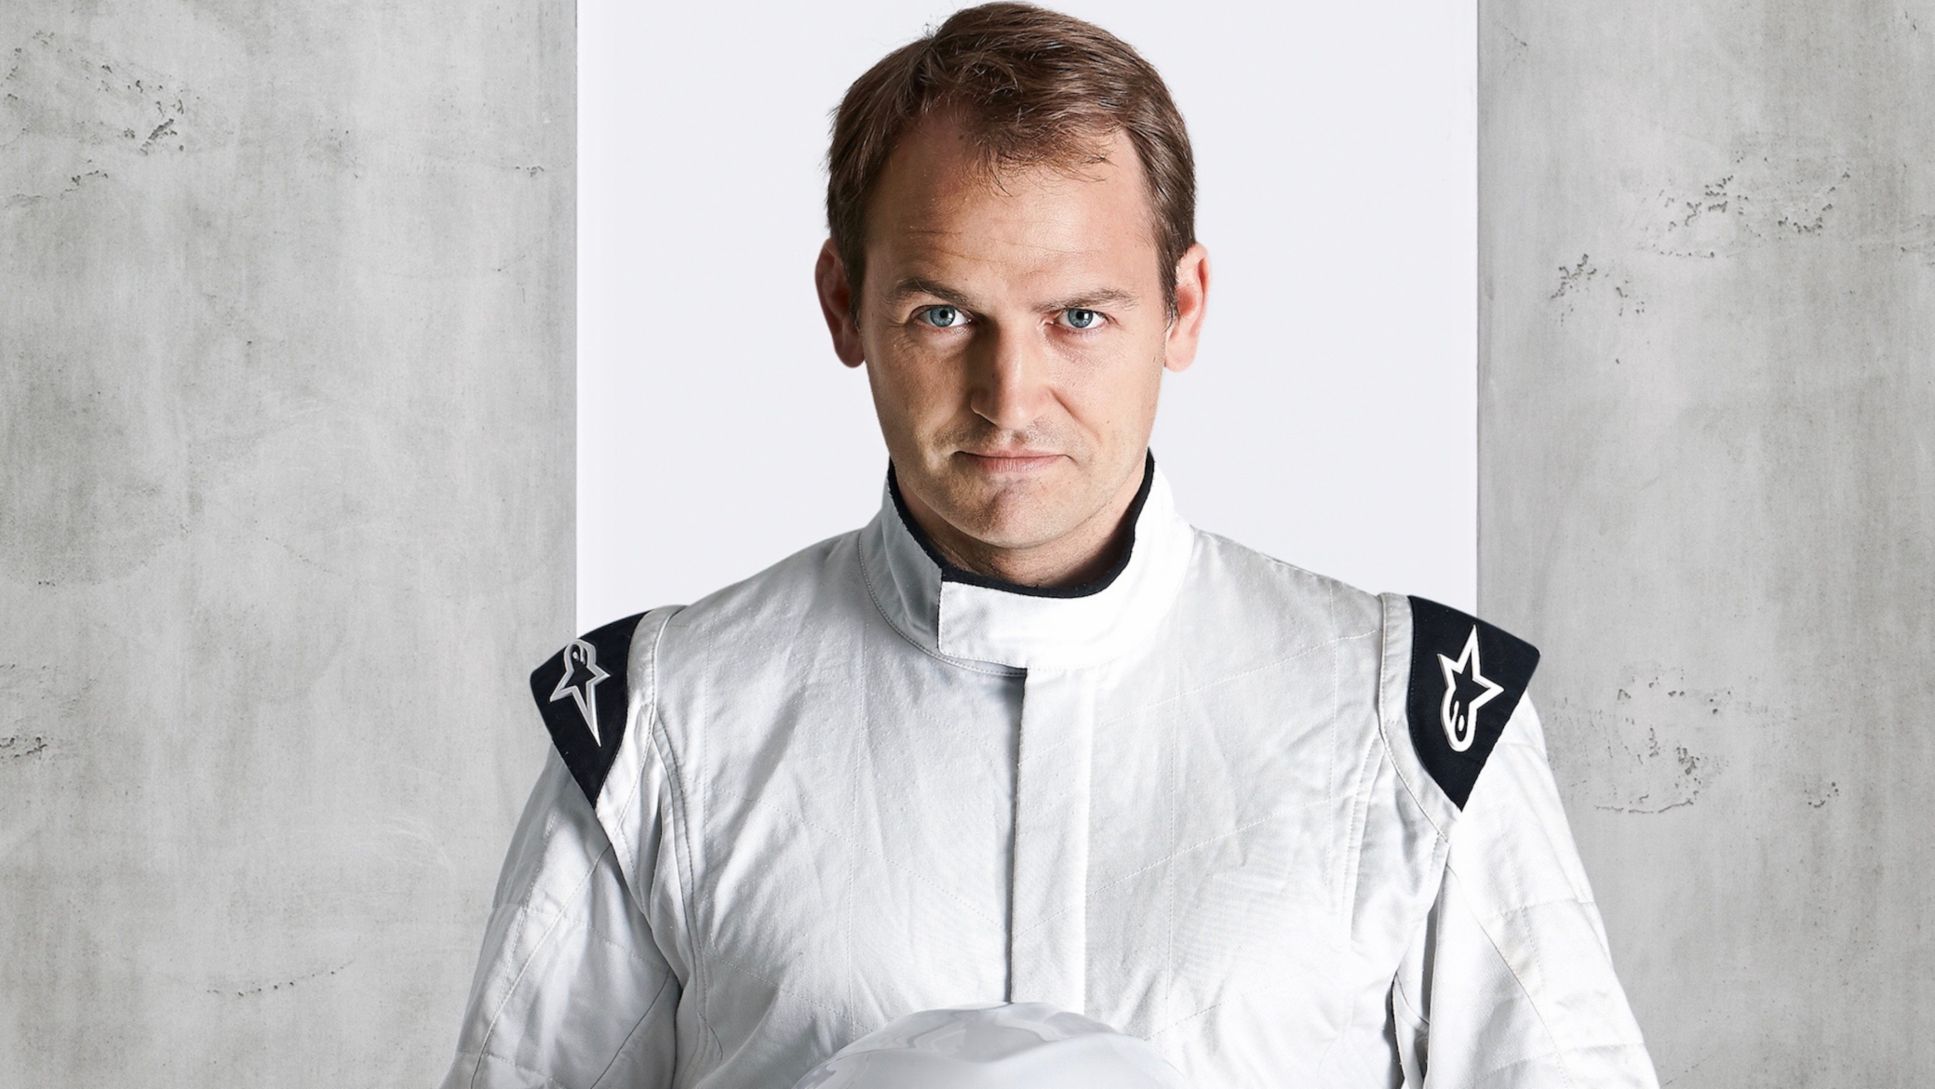 Ben Collins, 2018, Porsche AG